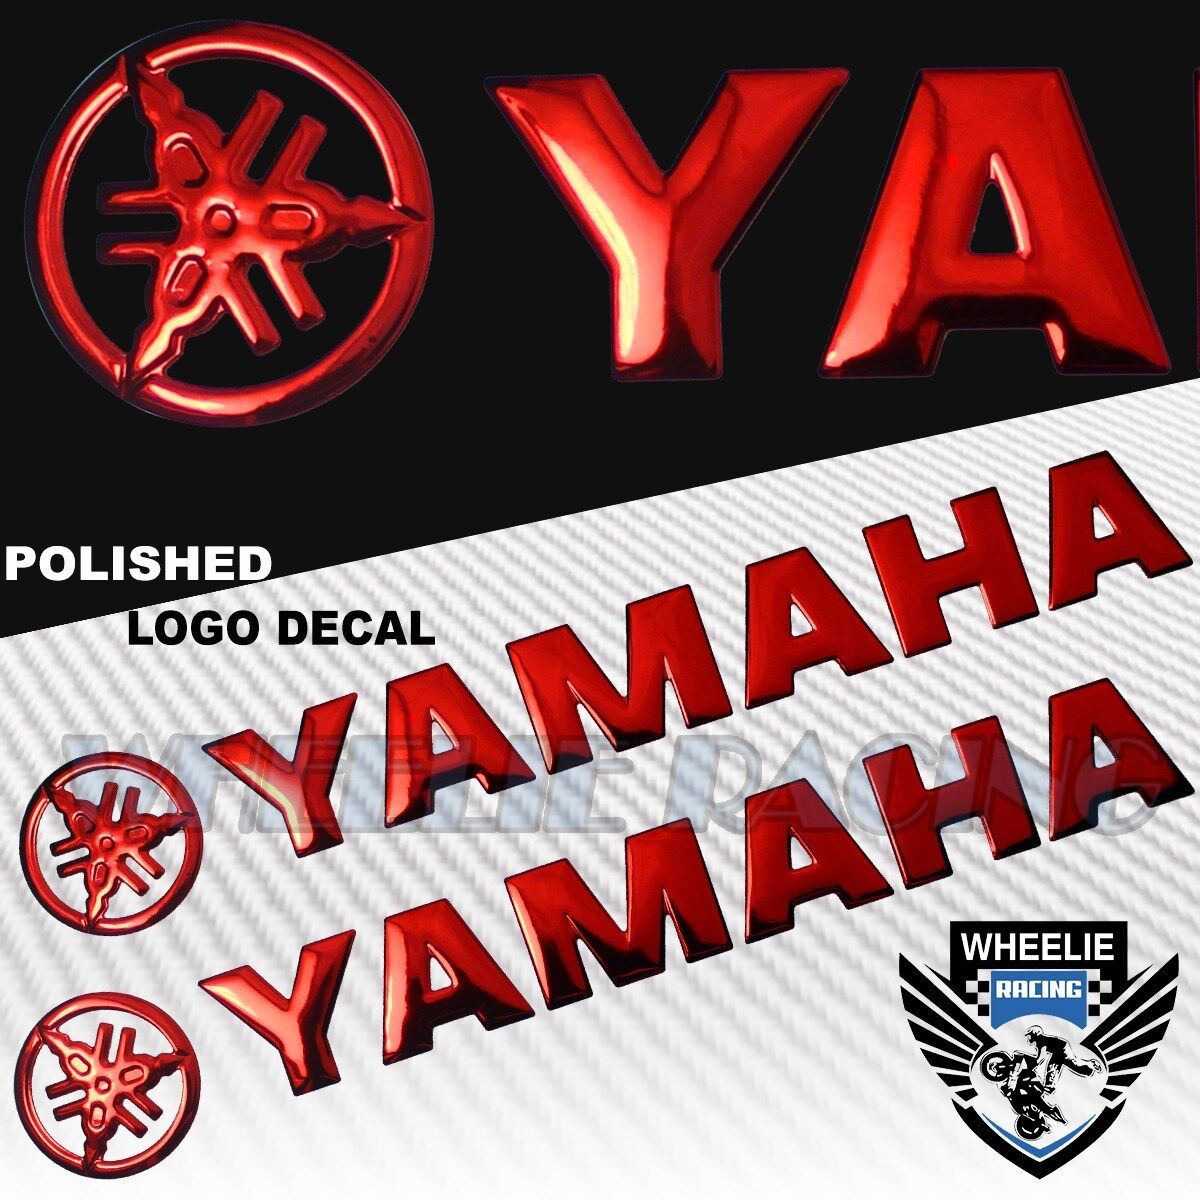 2 X 3.25"x 2" 3D ABS Emblem Decal Logo+Letter Fairing Sticker for Yamaha Chrome